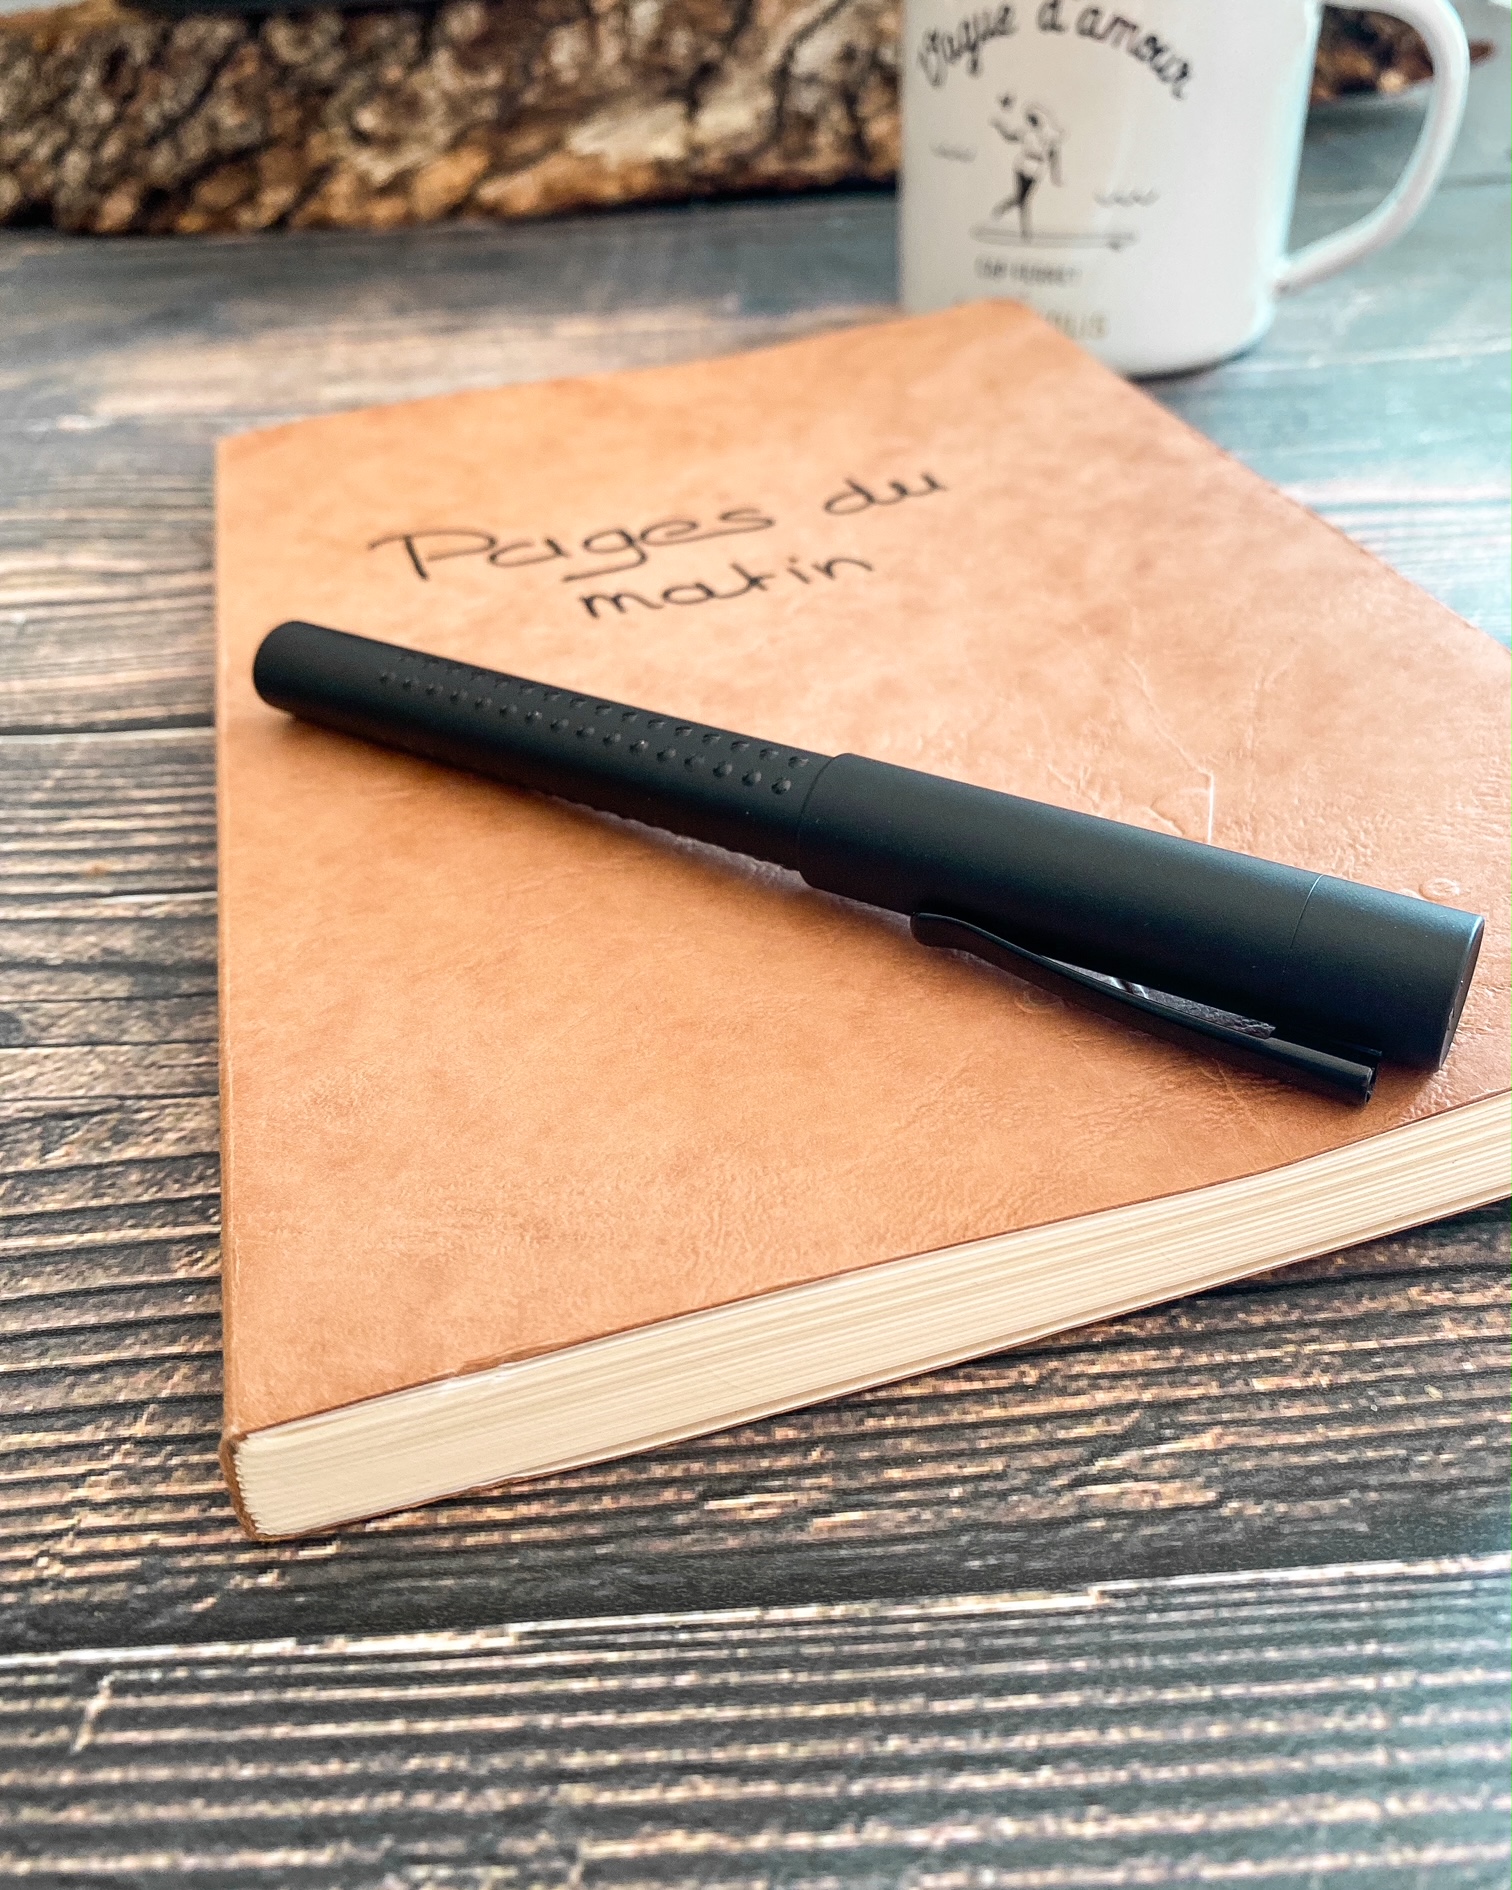 Sur une table en bois, au premier plan un carnet A5 couleur tabac, sur la couverture duquel est écrit à la main "Pages du matin". Un stylo noir est posé sur le carnet. A l'arrière plan, un mug en émail blanc sur lequel est écrit "vague d'amour".